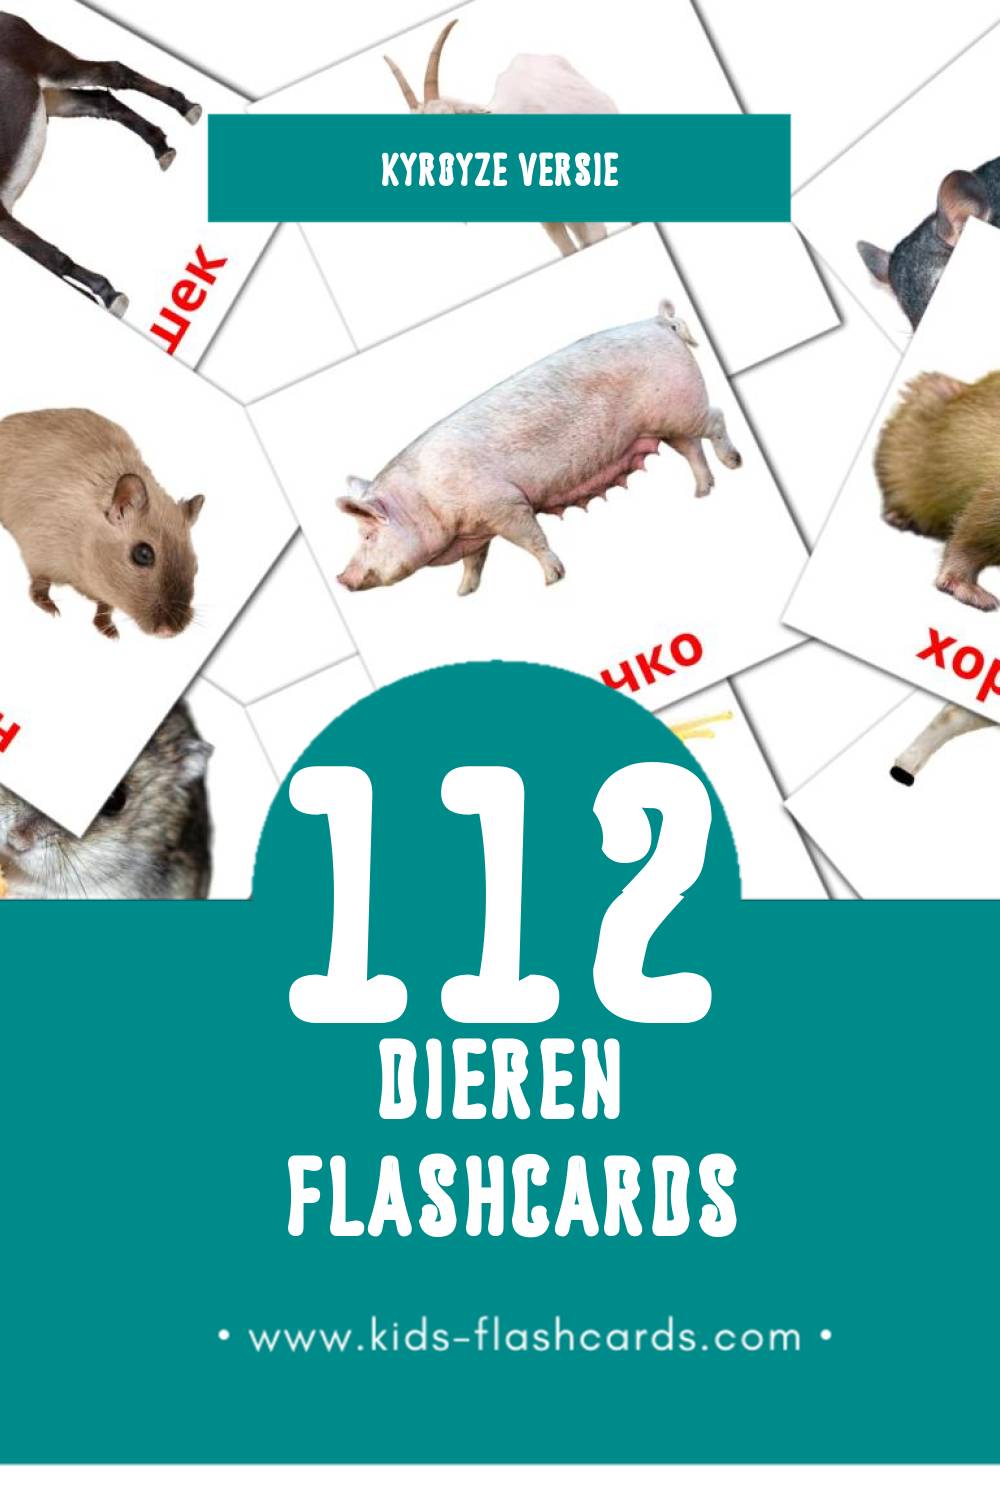 Visuele Жаныбарлар Flashcards voor Kleuters (112 kaarten in het Kyrgyz)